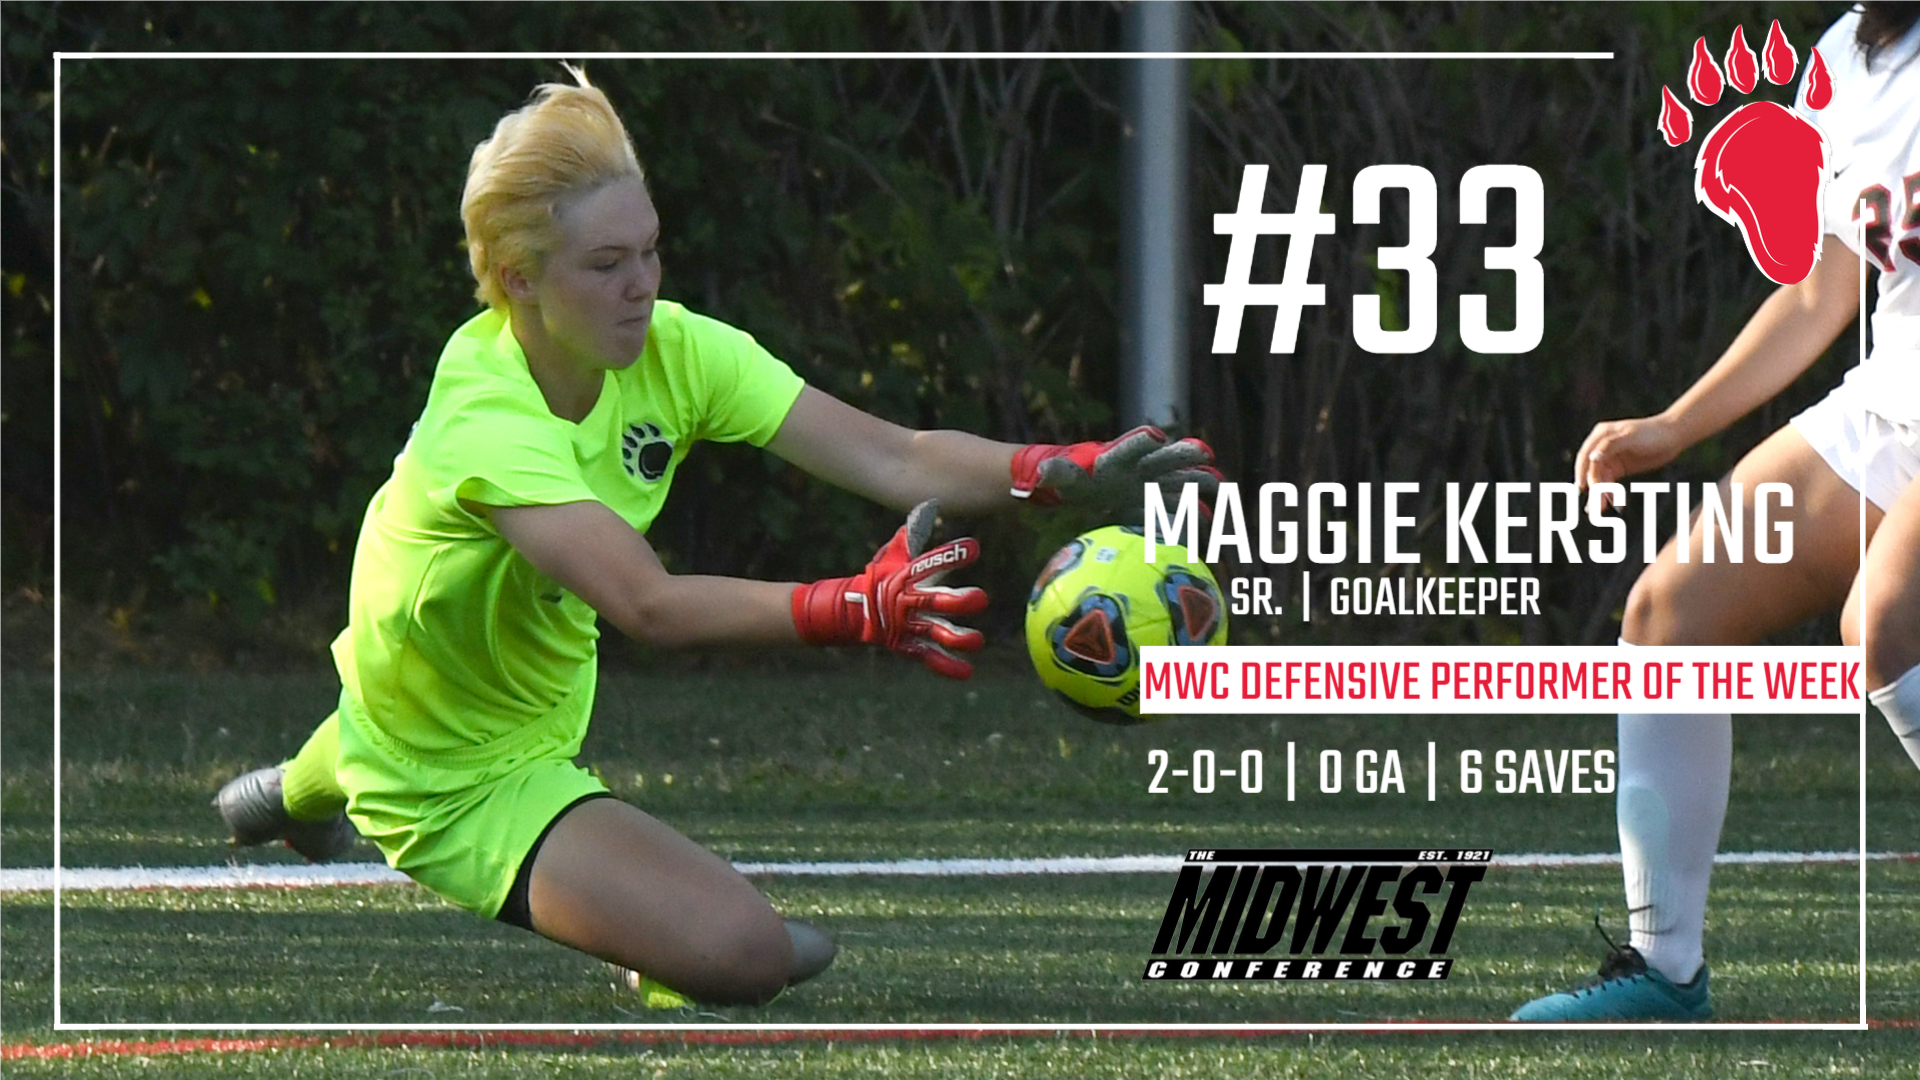 Maggie Kersting Named MWC Defensive Performer of the Week